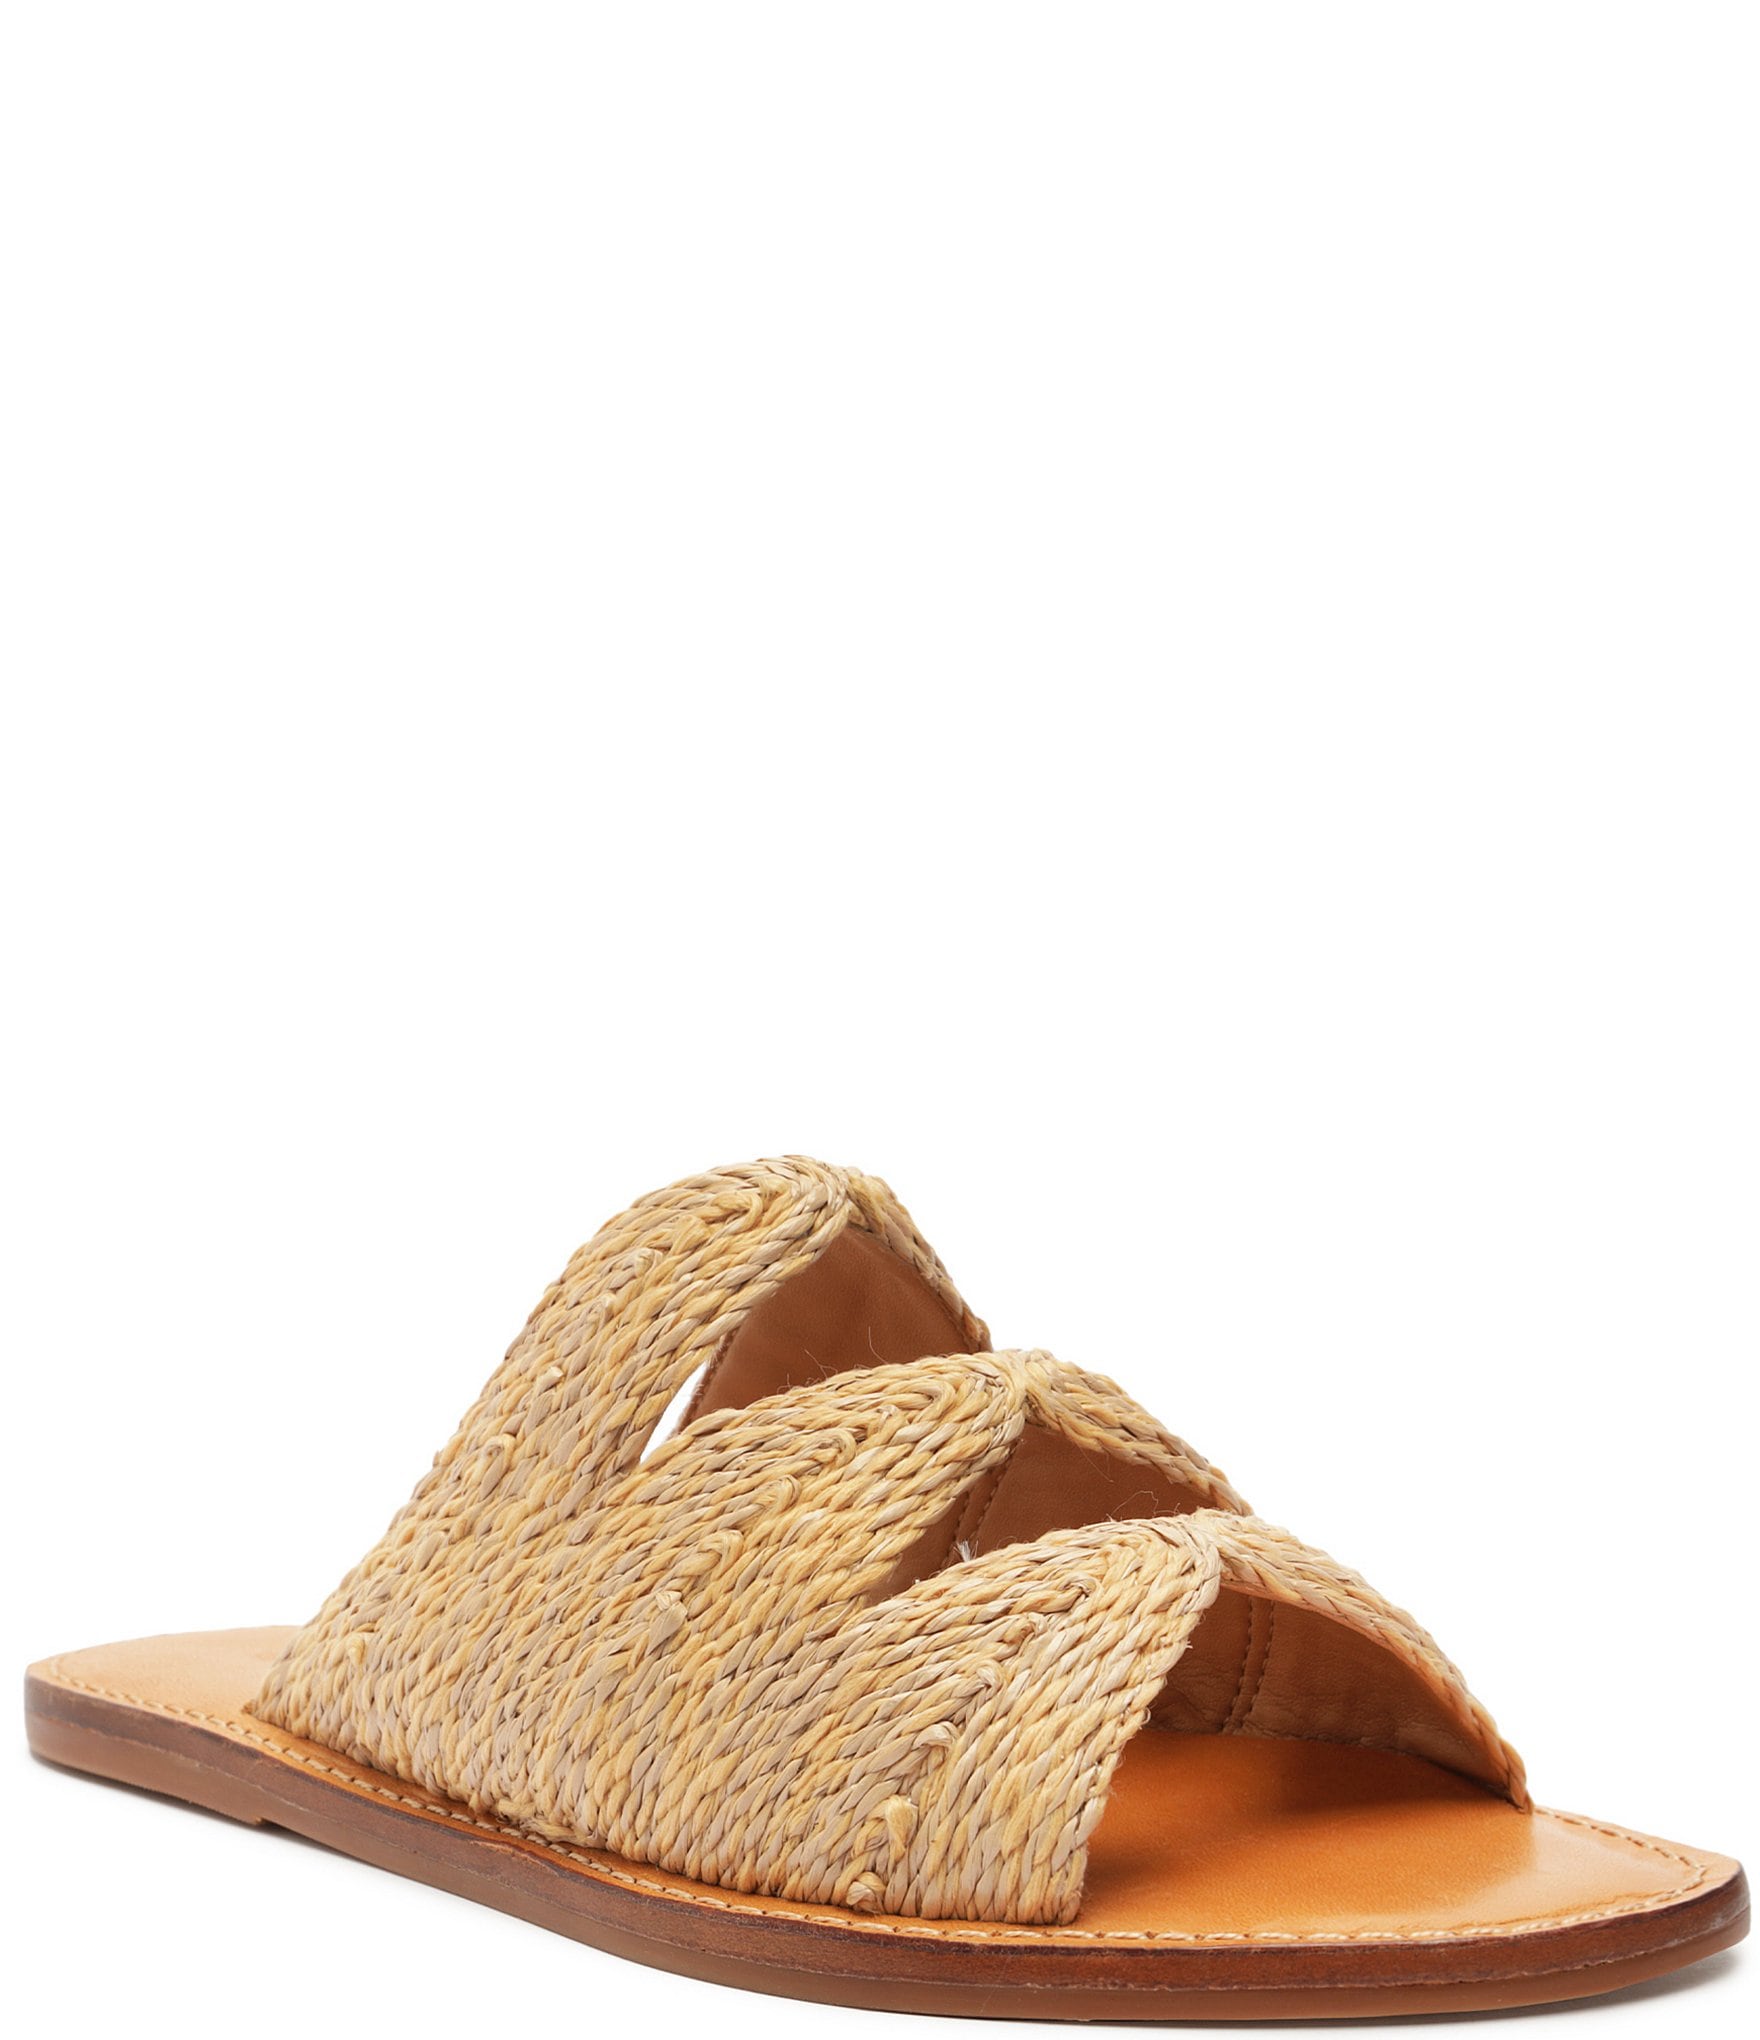 Schutz Ivy Woven Flat Sandals | Dillard's